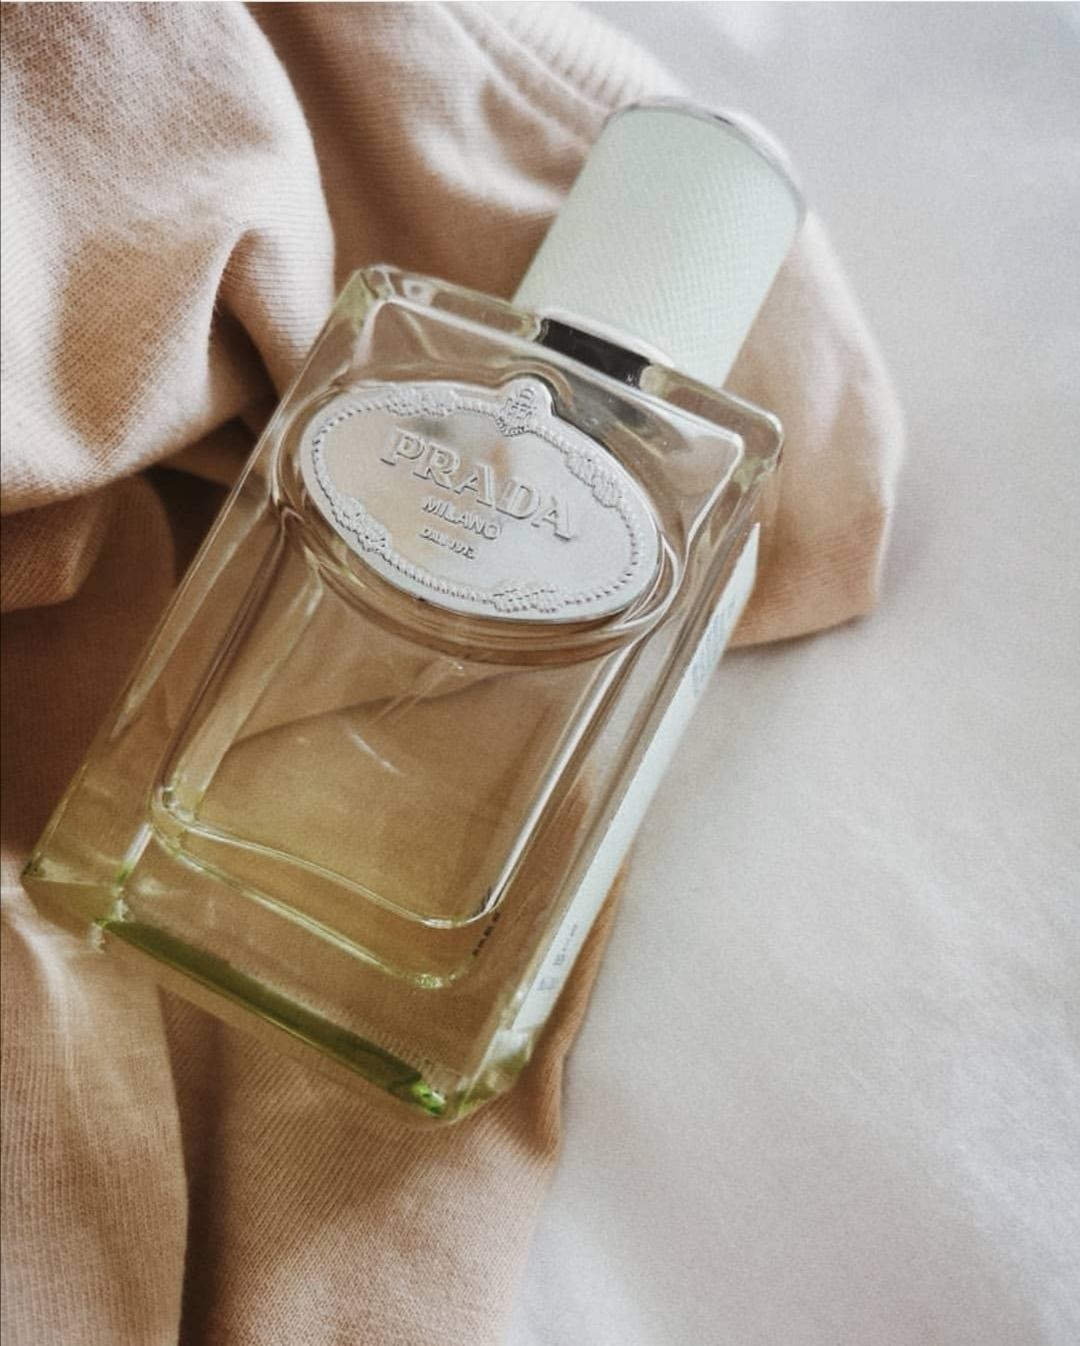 Dies ist mein absoluter #lieblingsduft und passt einfach immer #beautychallenge #parfum #prada #milano #goodvibes 